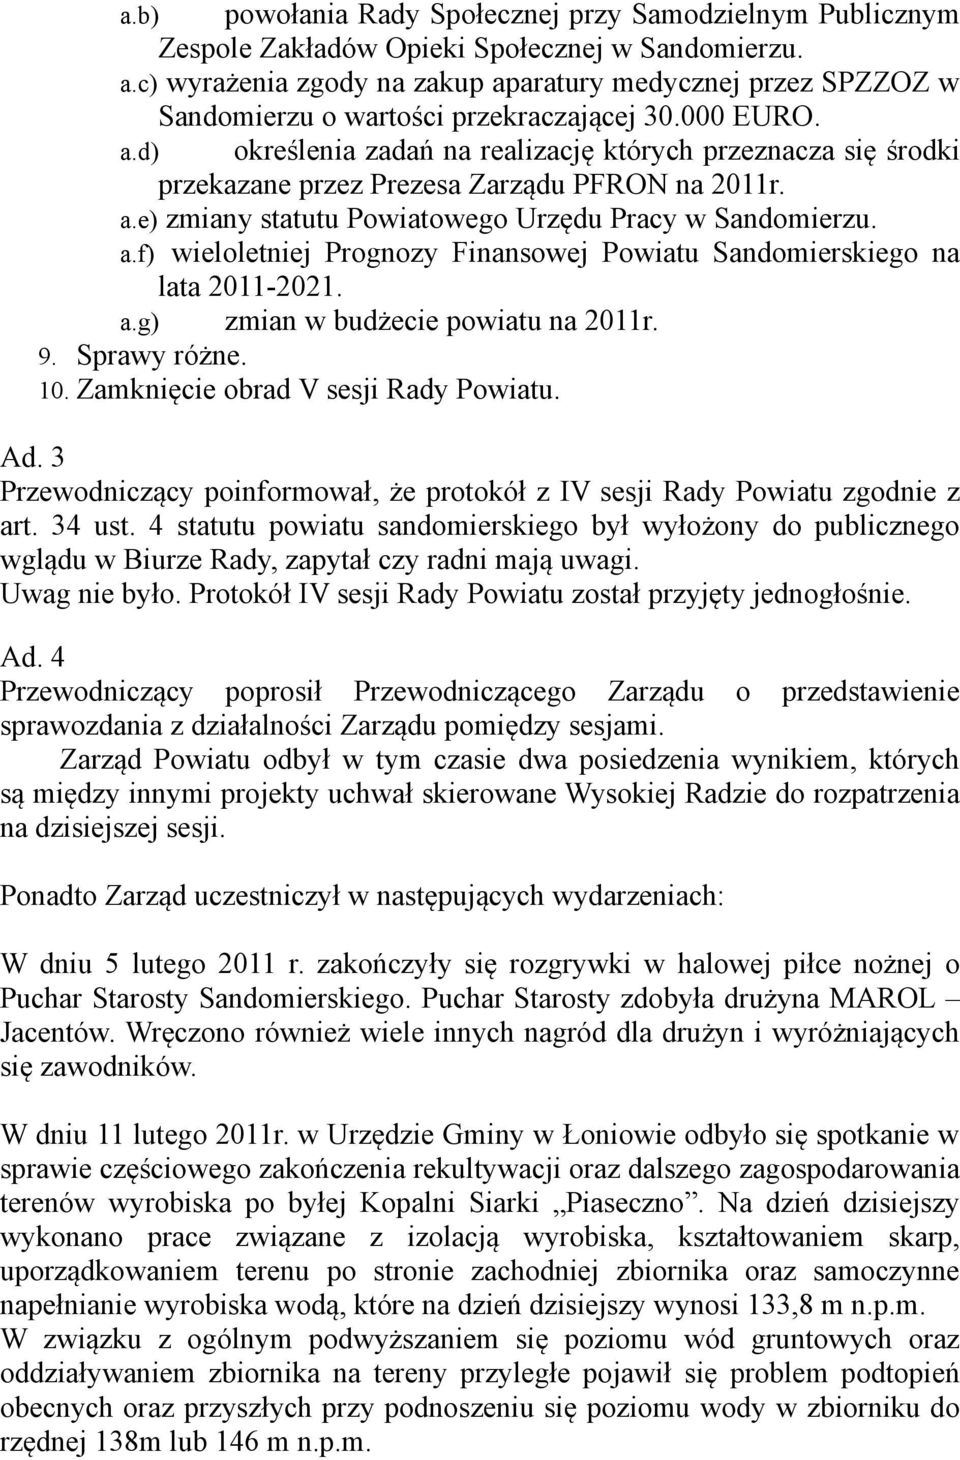 a.e) zmiany statutu Powiatowego Urzędu Pracy w Sandomierzu. a.f) wieloletniej Prognozy Finansowej Powiatu Sandomierskiego na lata 2011-2021. a.g) zmian w budżecie powiatu na 2011r. 9. Sprawy różne.